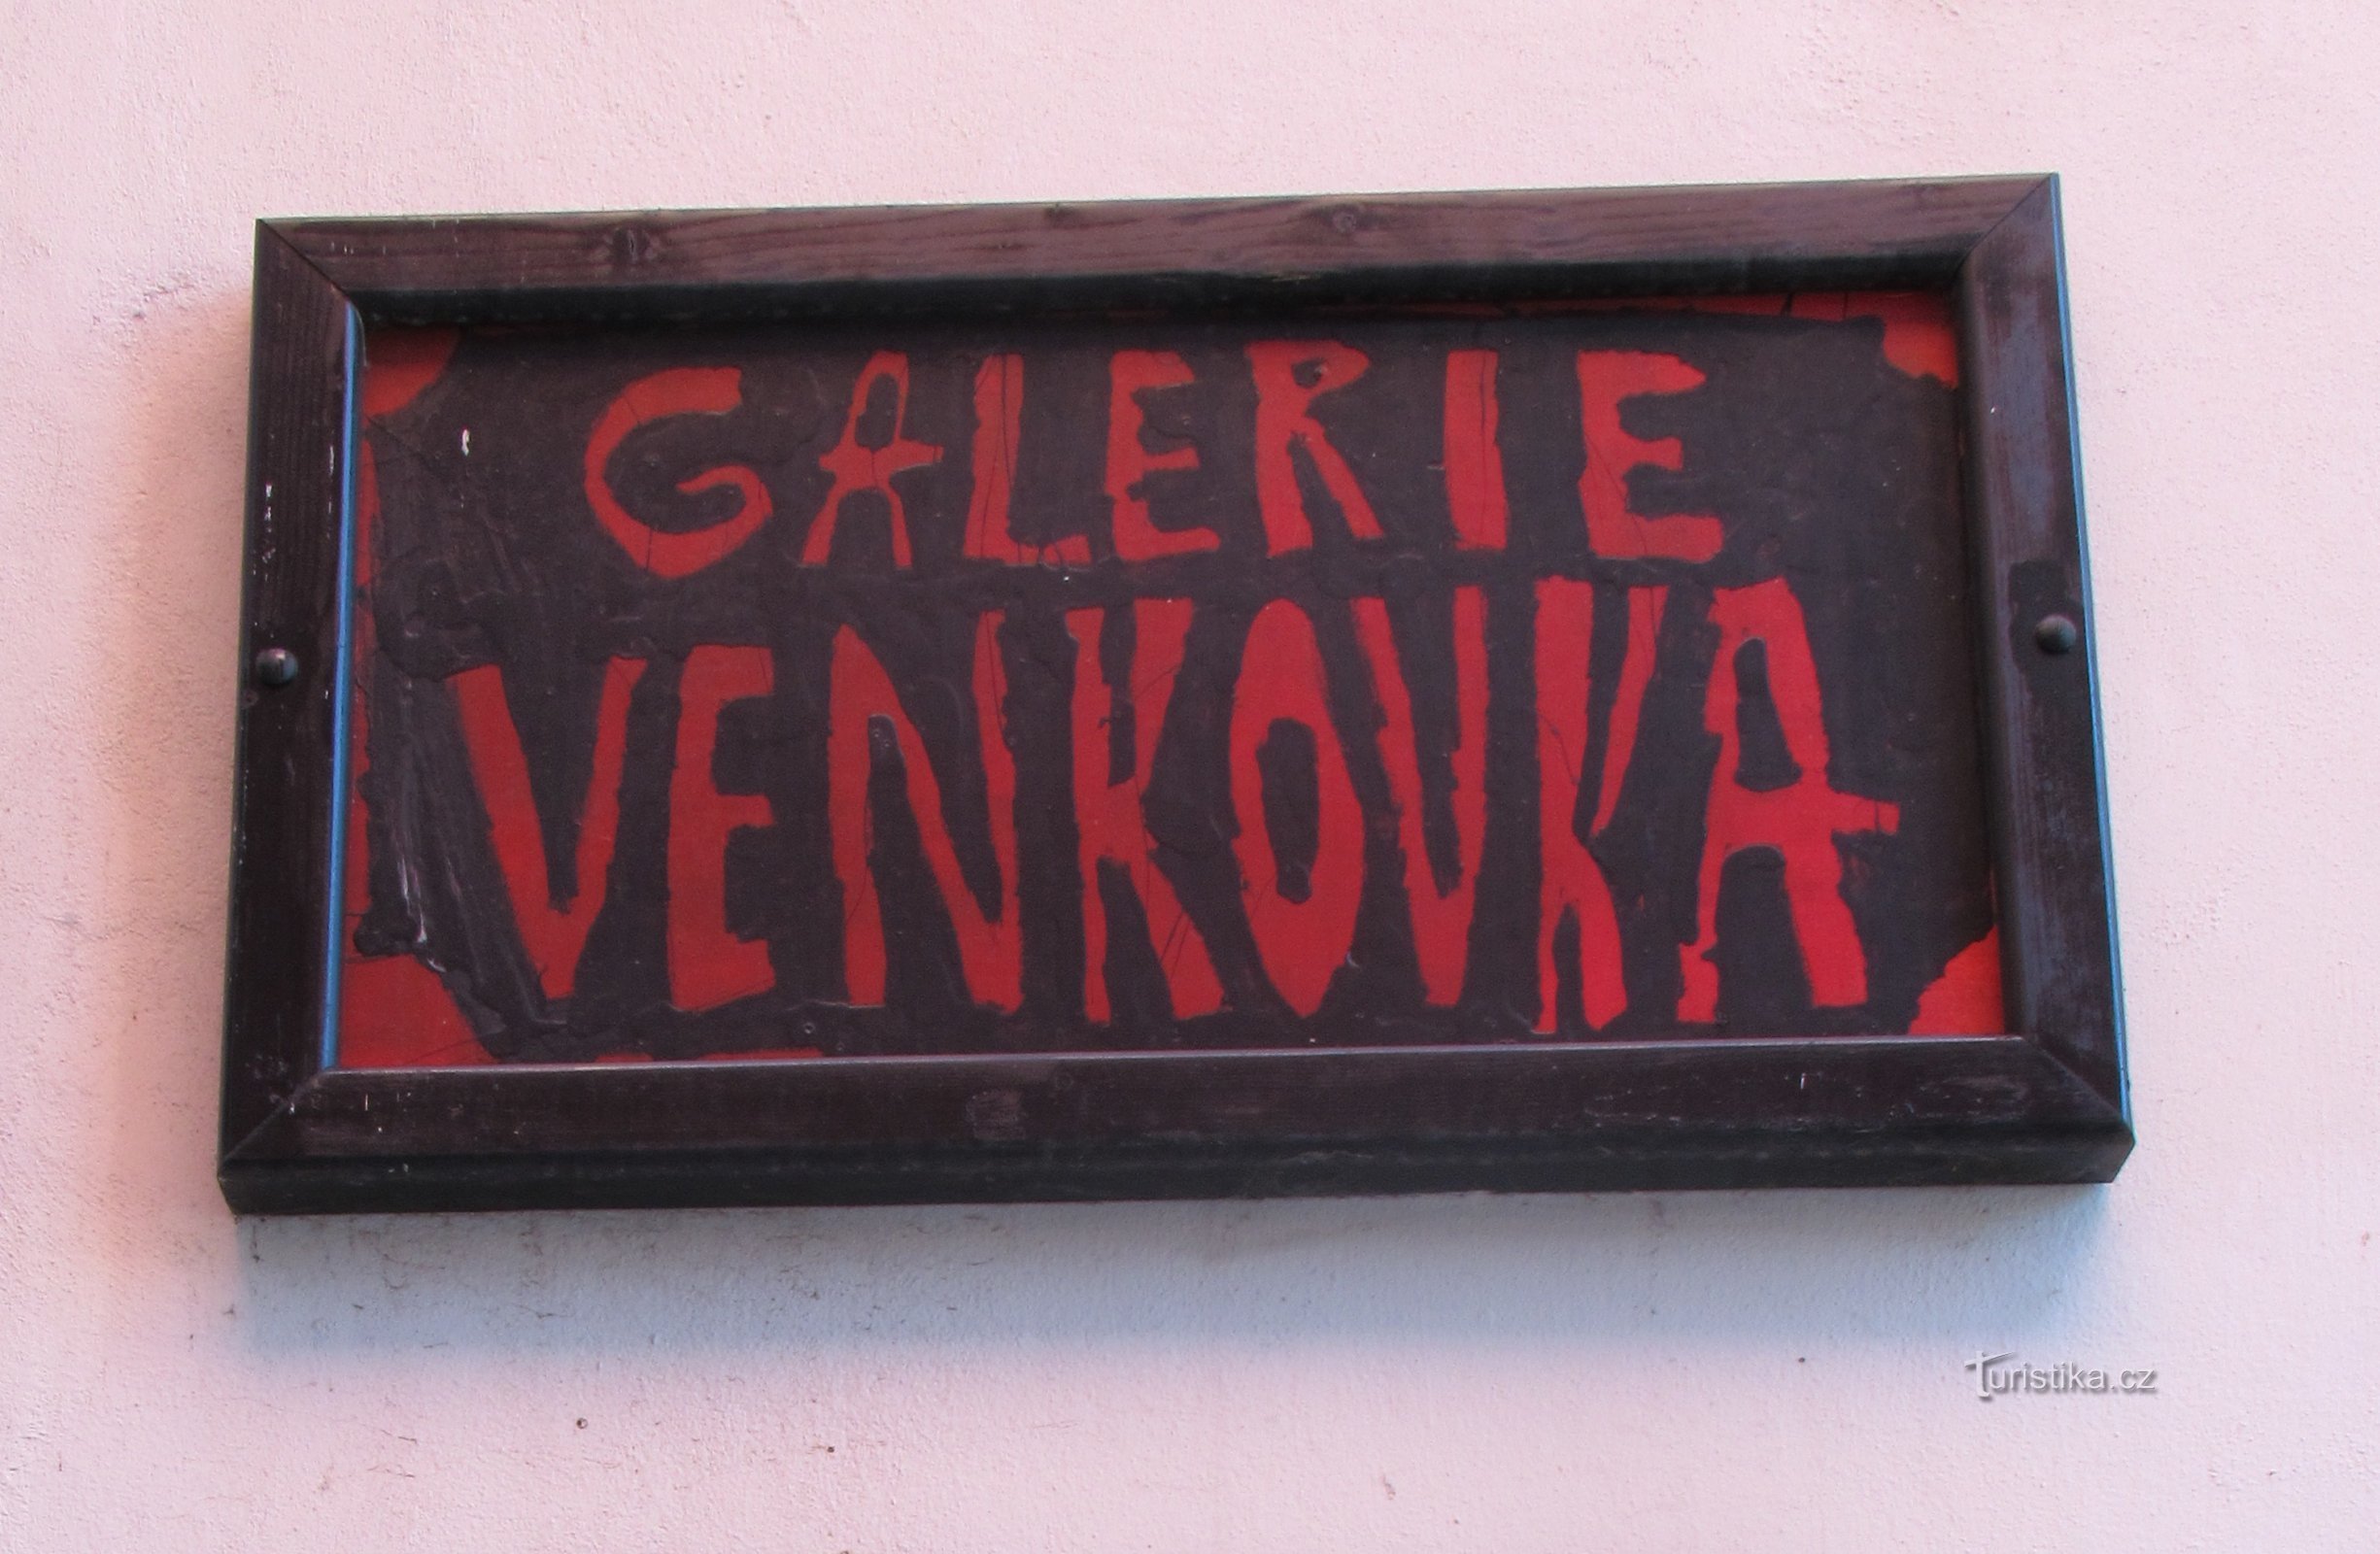 Svitavská Venkovka - ili slike na ulicama grada